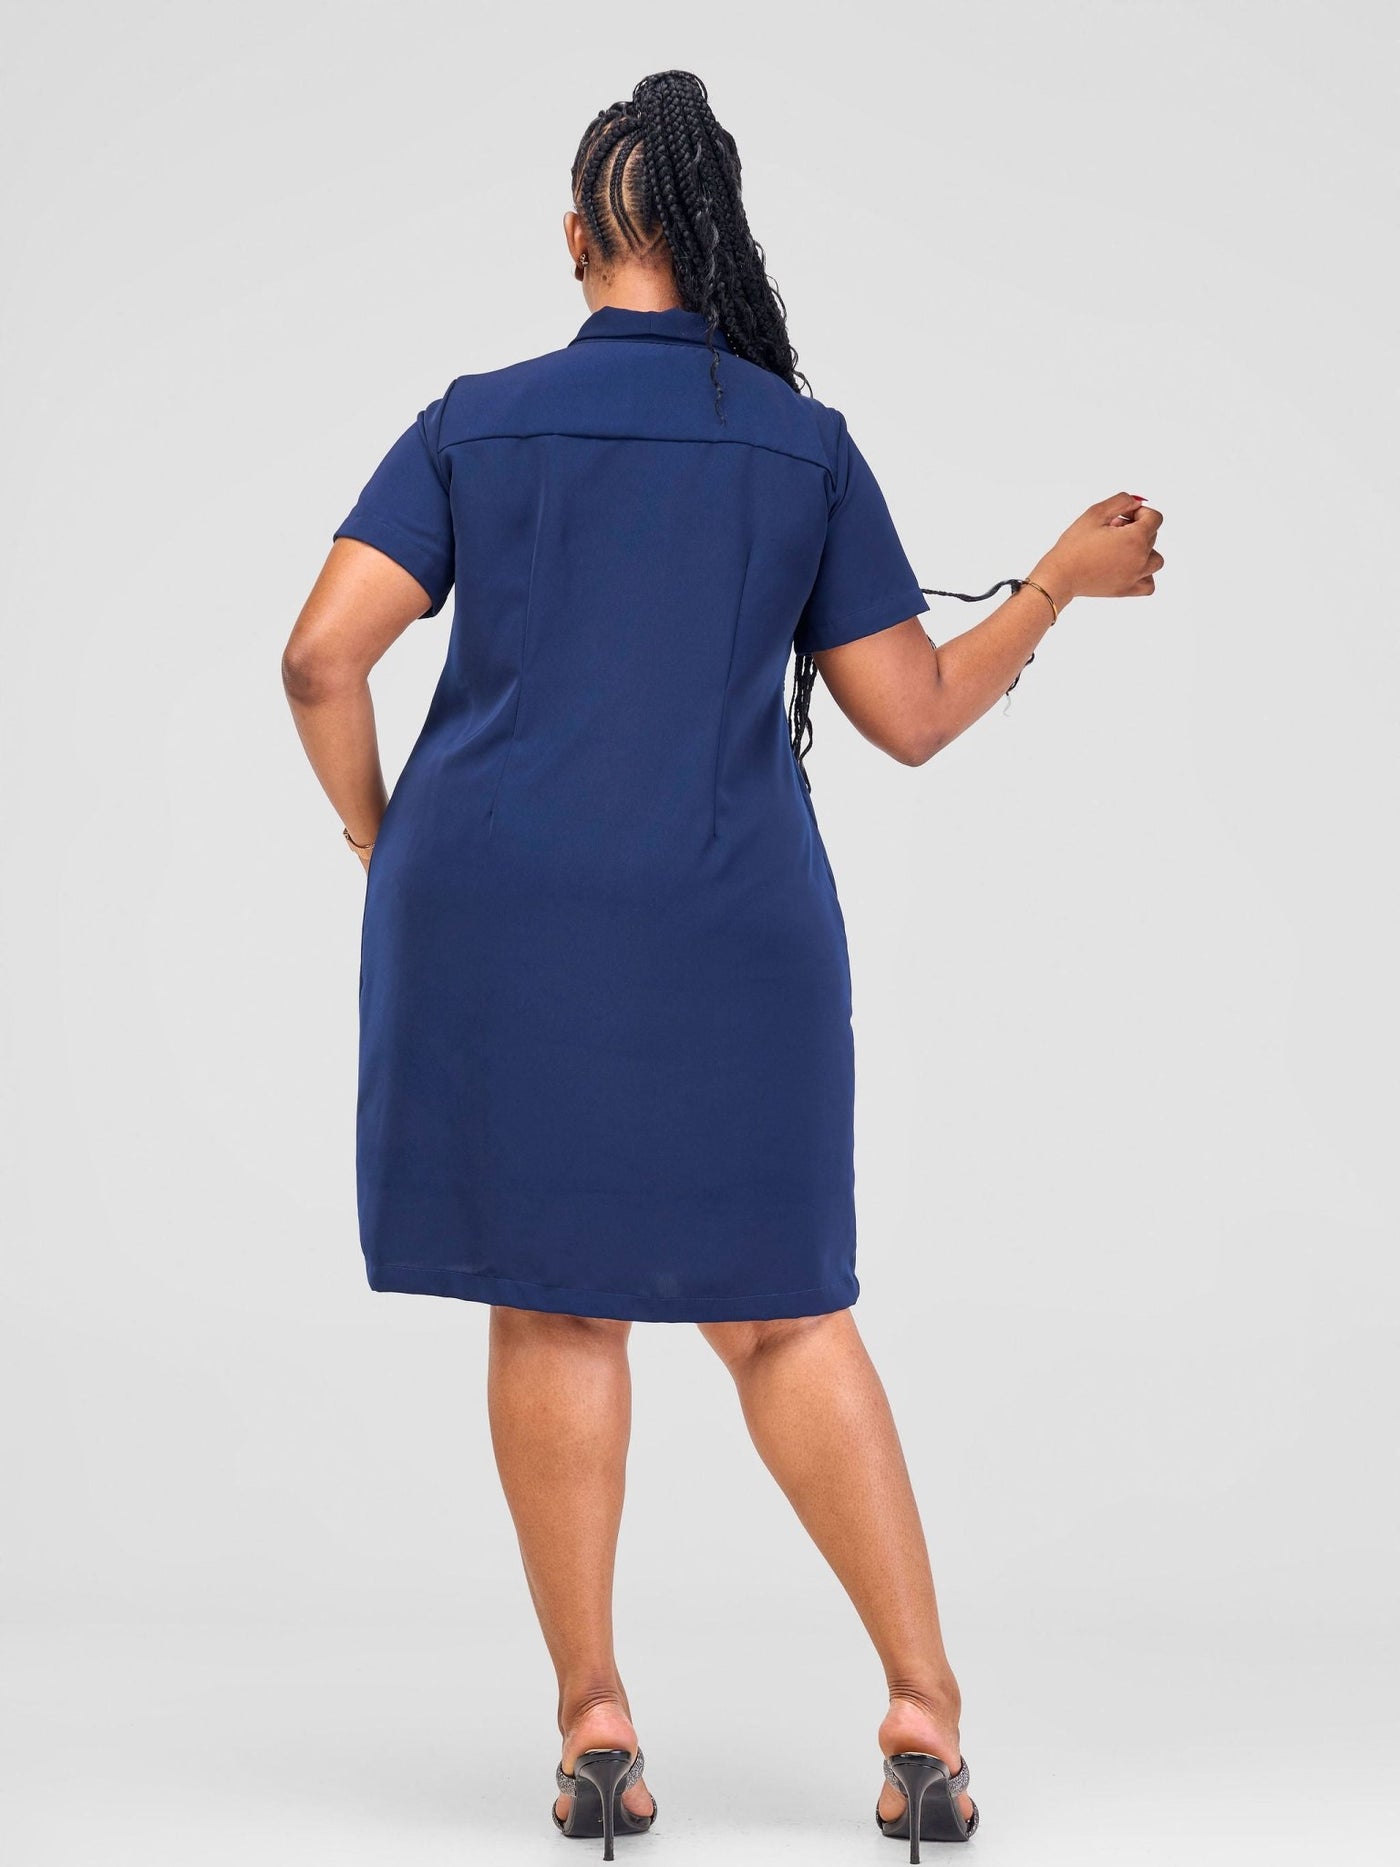 Vivo Arafa Short Sleeve Shift Dress - Navy Blue - Shopzetu